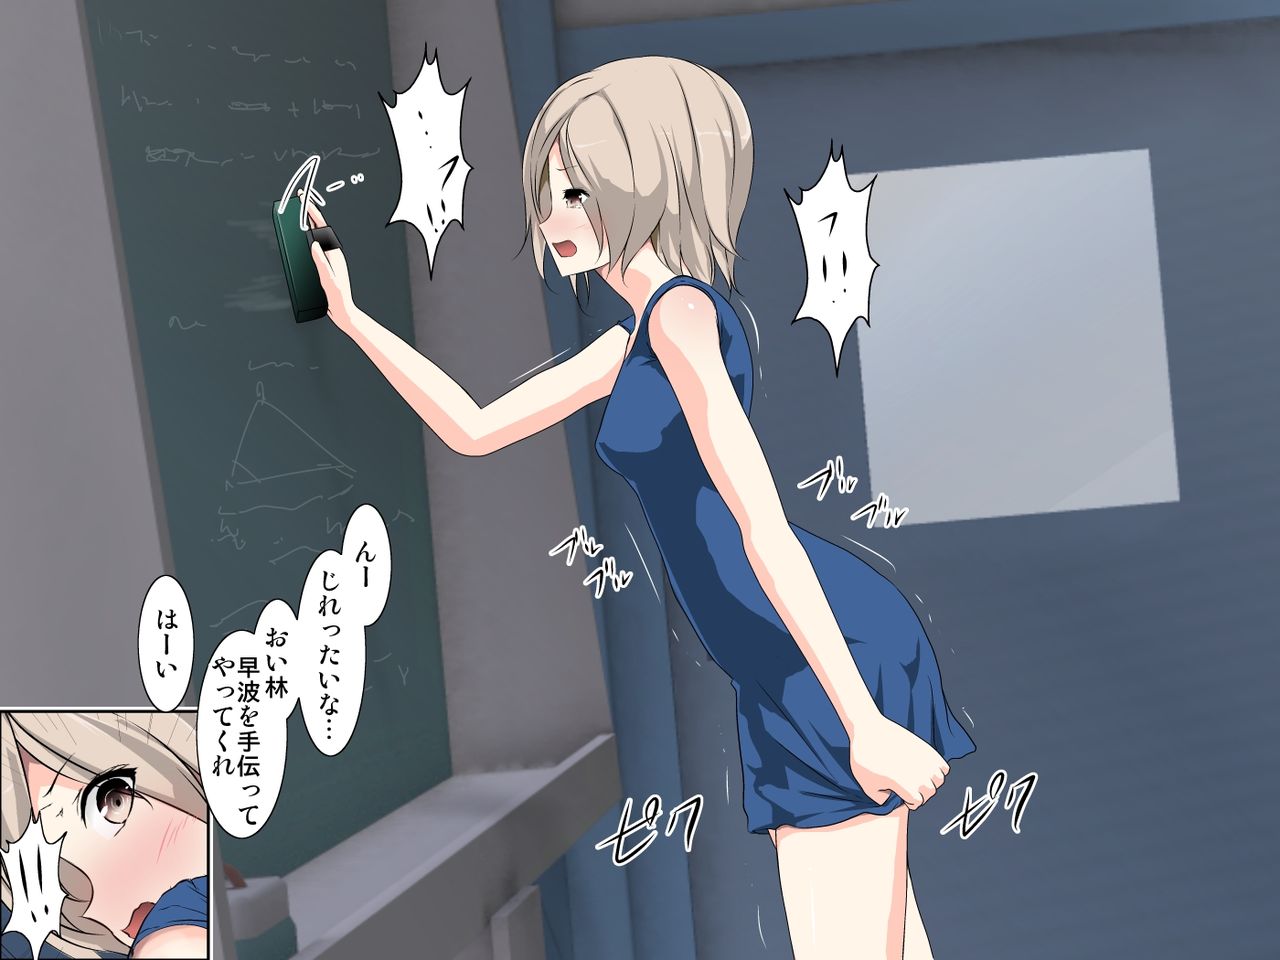 Mitsuki an teacher